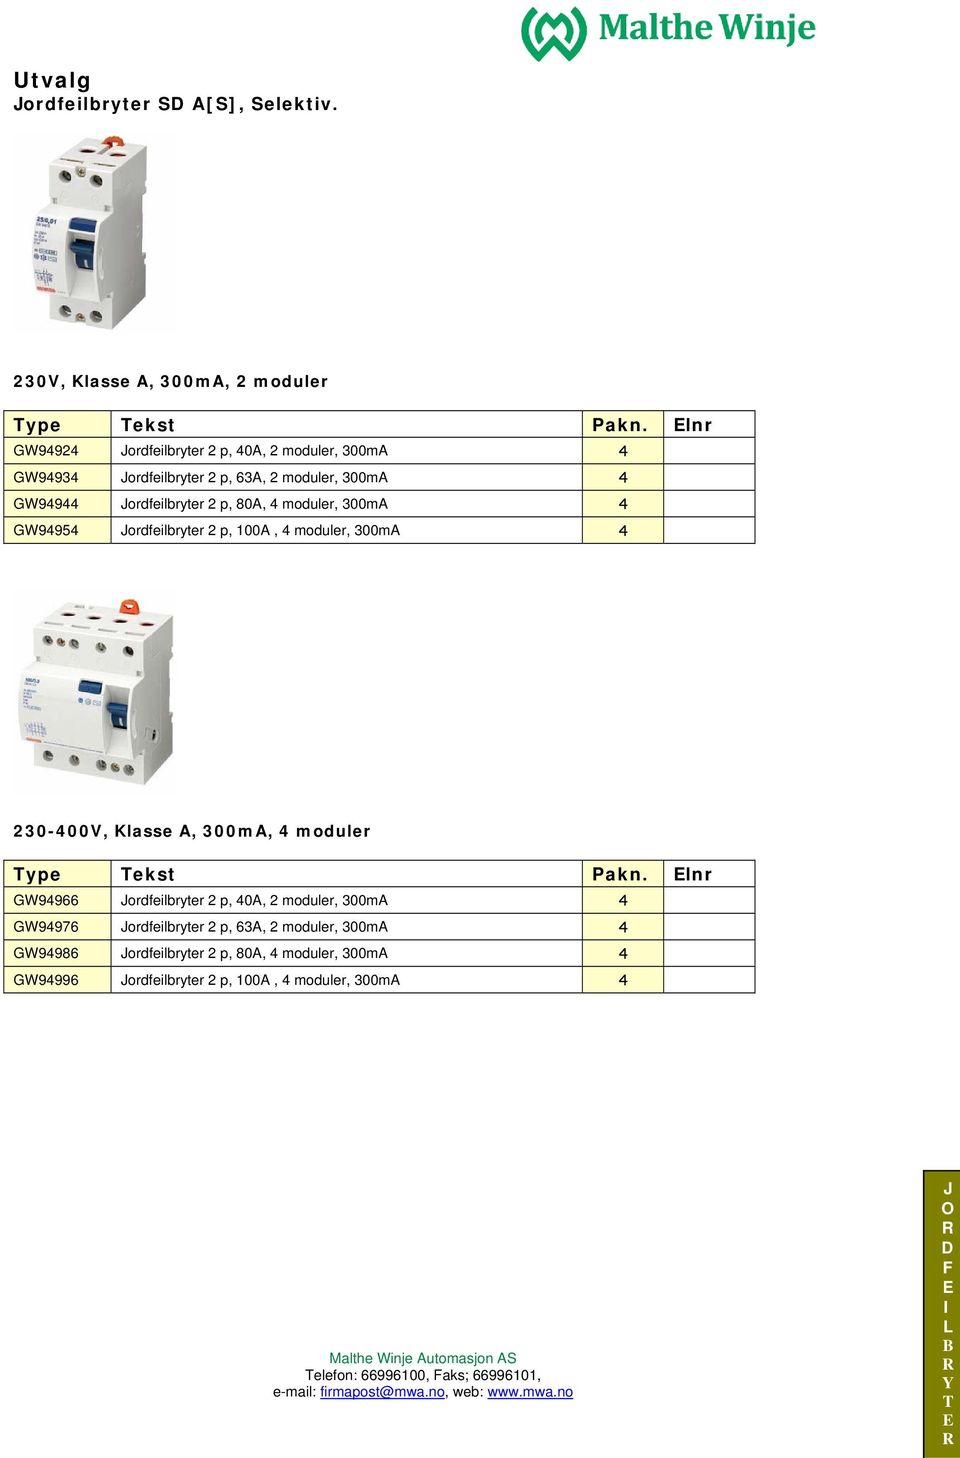 4 moduler, 300mA 4 GW94954 ordfeilbryter 2 p, 100A, 4 moduler, 300mA 4 230-400V, Klasse A, 300mA, 4 moduler ype ekst Pakn.